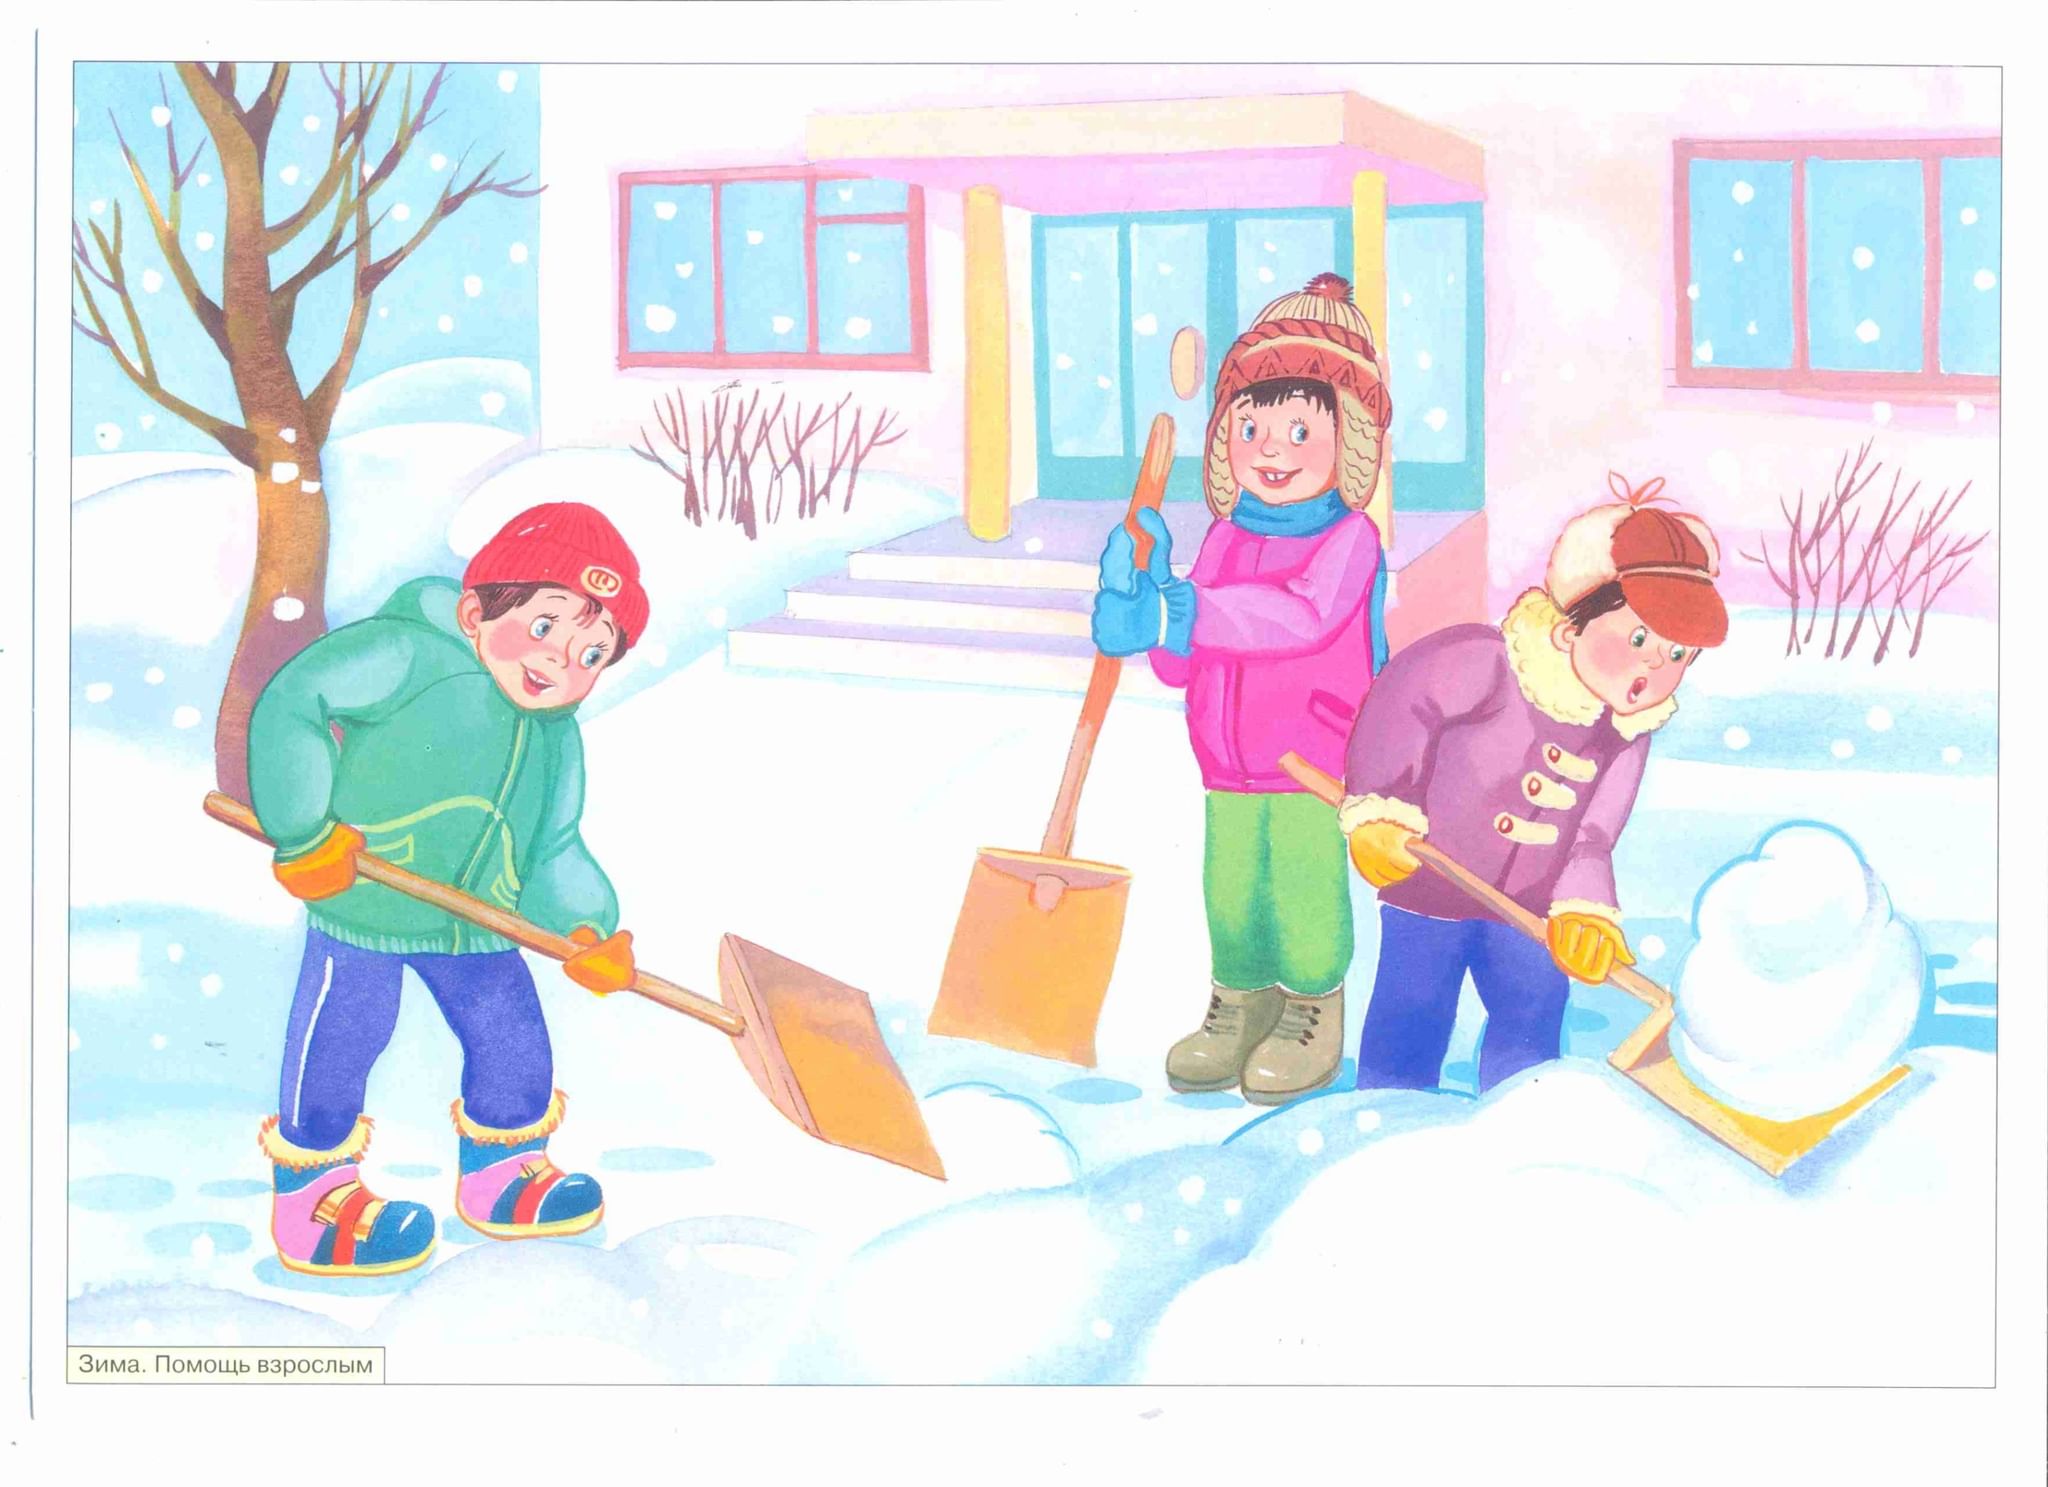 Труд и развлечения. Труд людей зимой. Зима для дошкольников. Занятия людей зимой. Сюжетные картины для дошкольников.